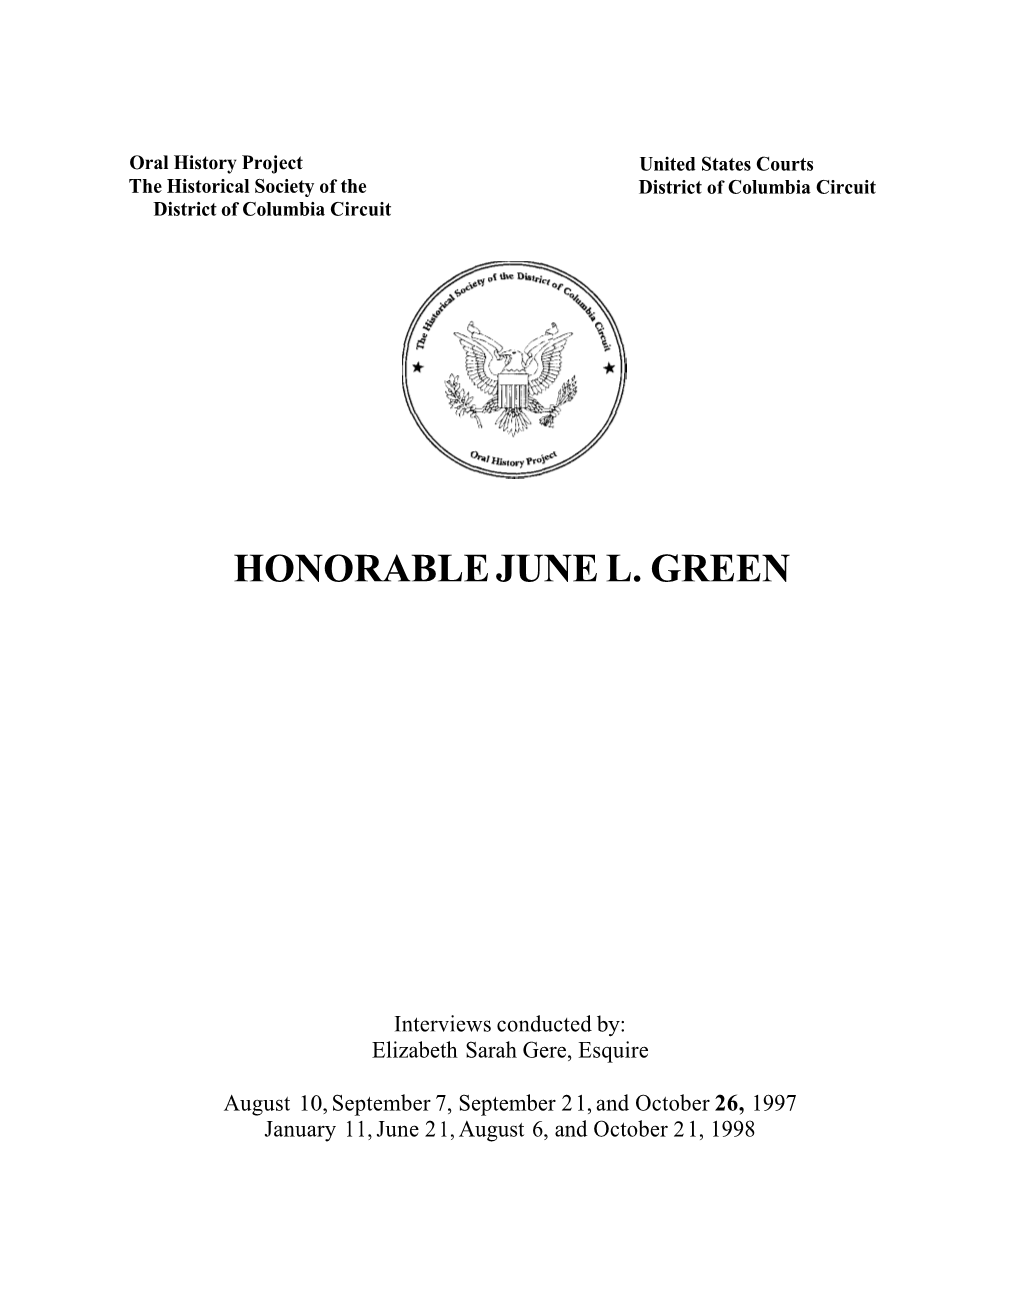 Honorable June L. Green